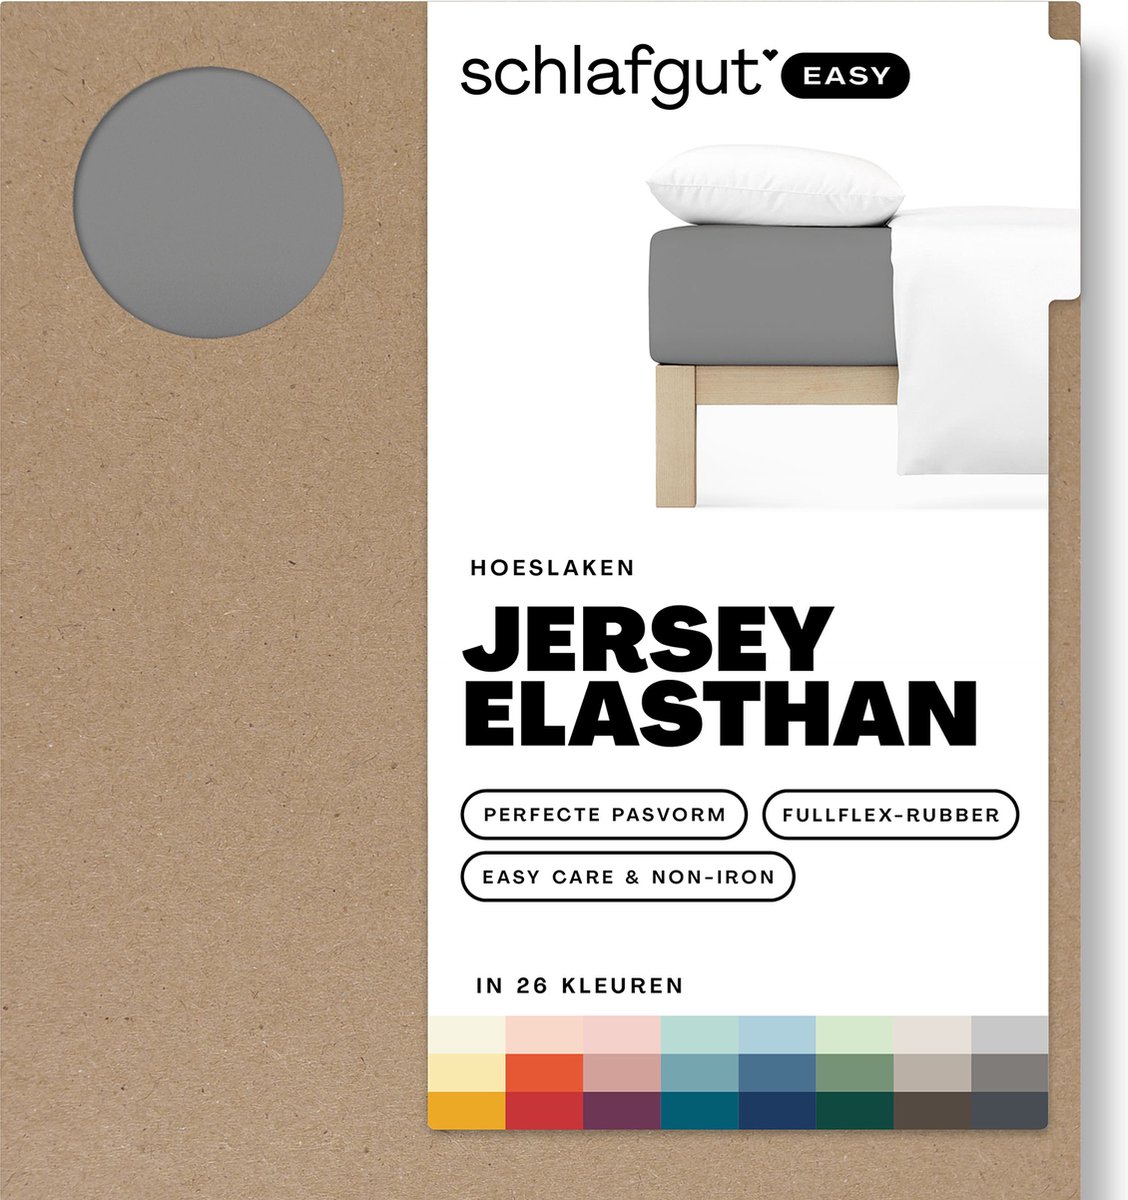 Schlafgut Easy Jersey Elasthan Hoeslaken XL 180x200 200x220 128 Grey Mid